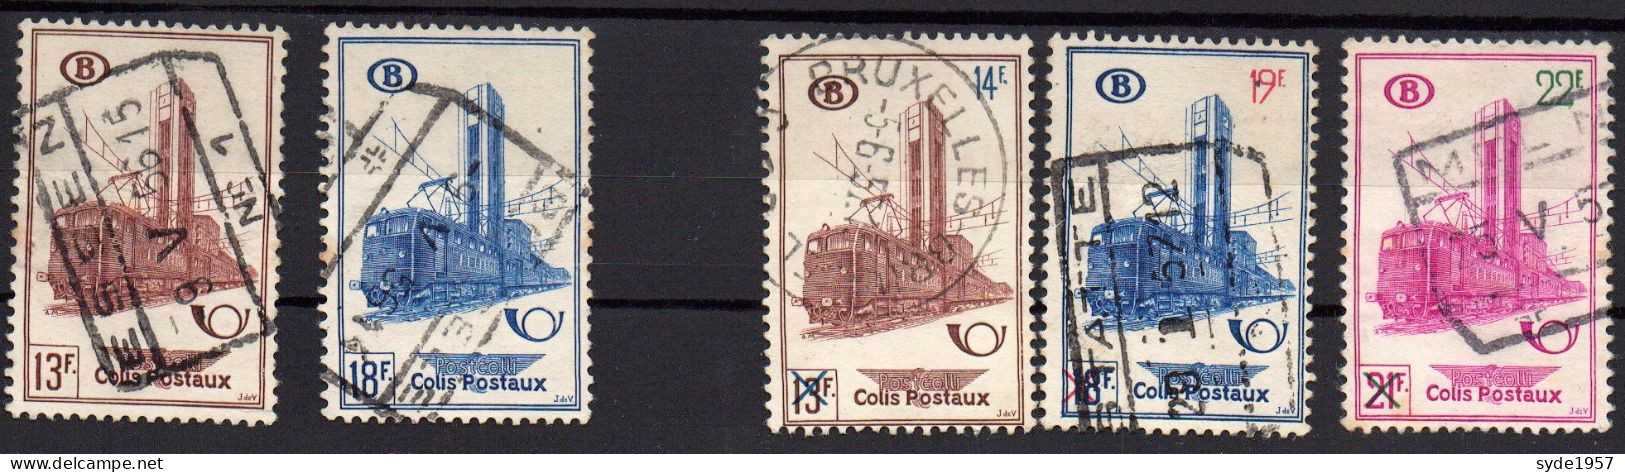 Belgique Chemin De Fer 1954-1956 COB CF355, 356, 358, 359, 360,  5 Timbres Oblitérés, - Usados